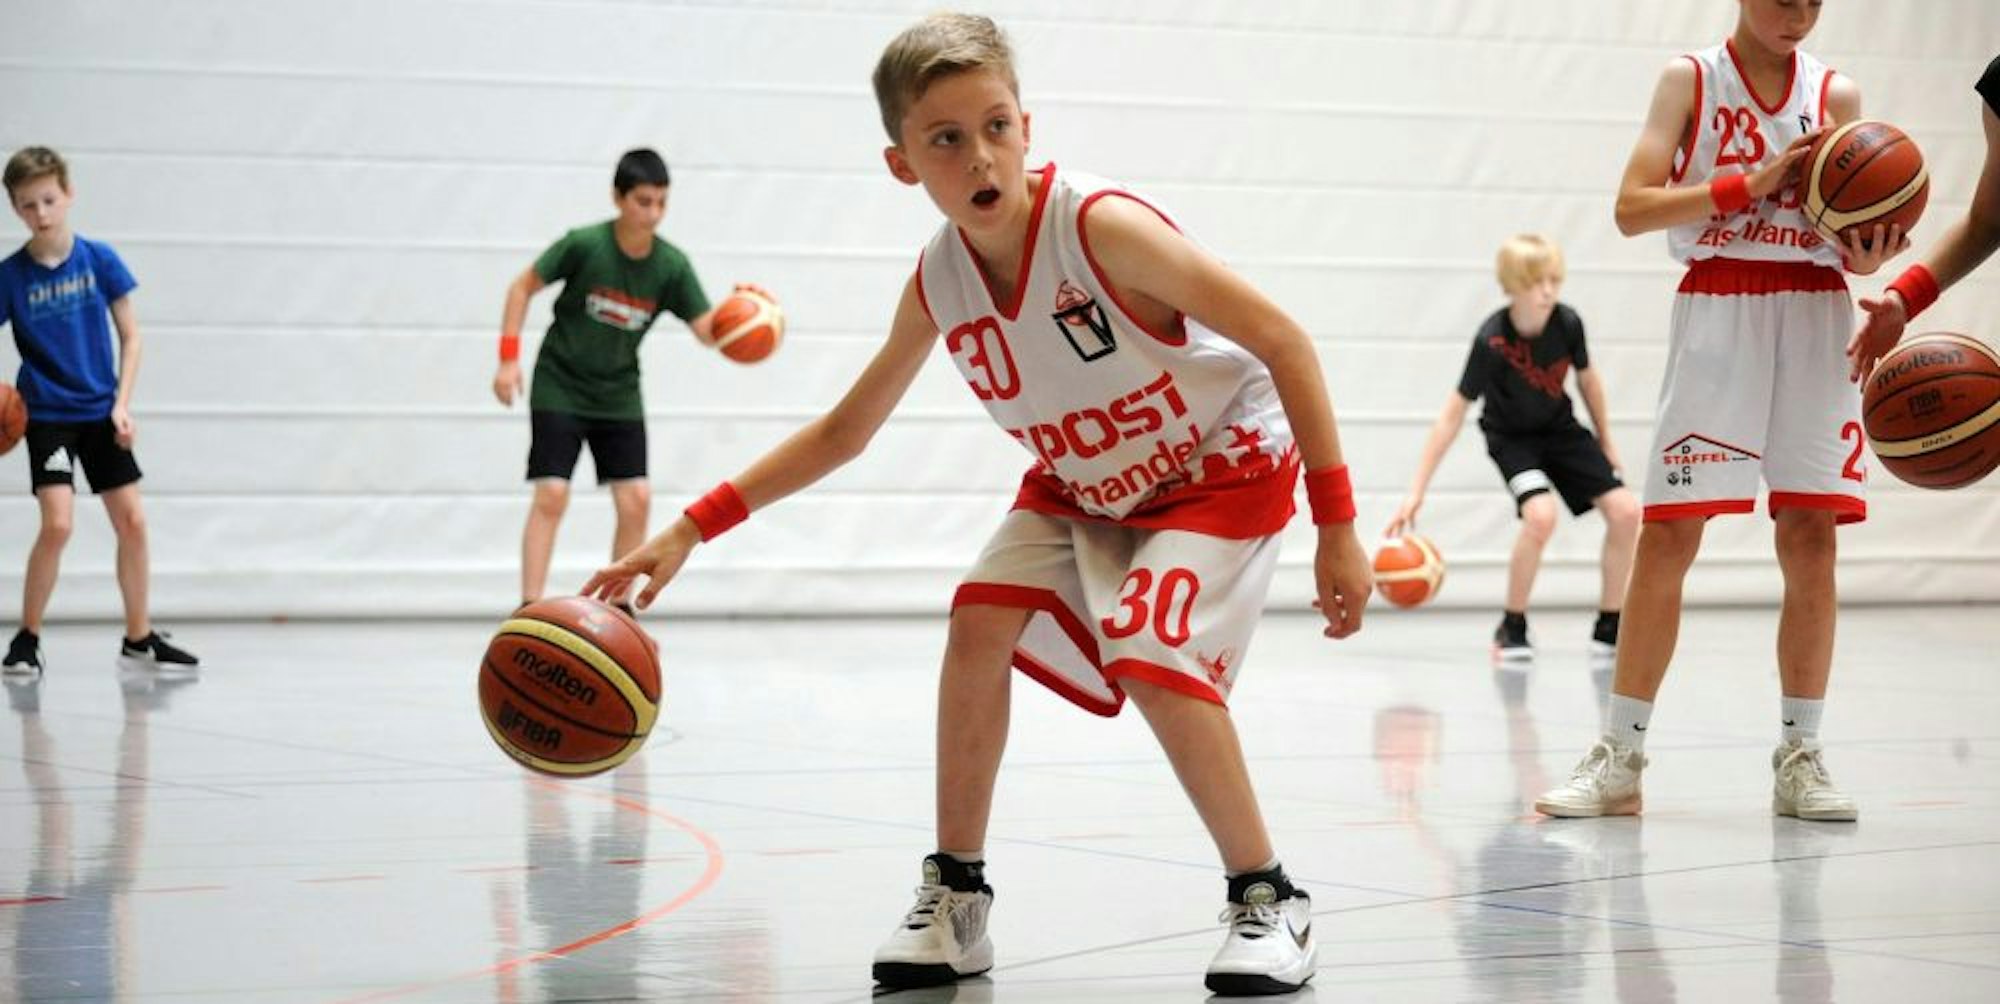 Viele Kinder kommen jedes Jahr zu dem Leichlinger Basketball Camp